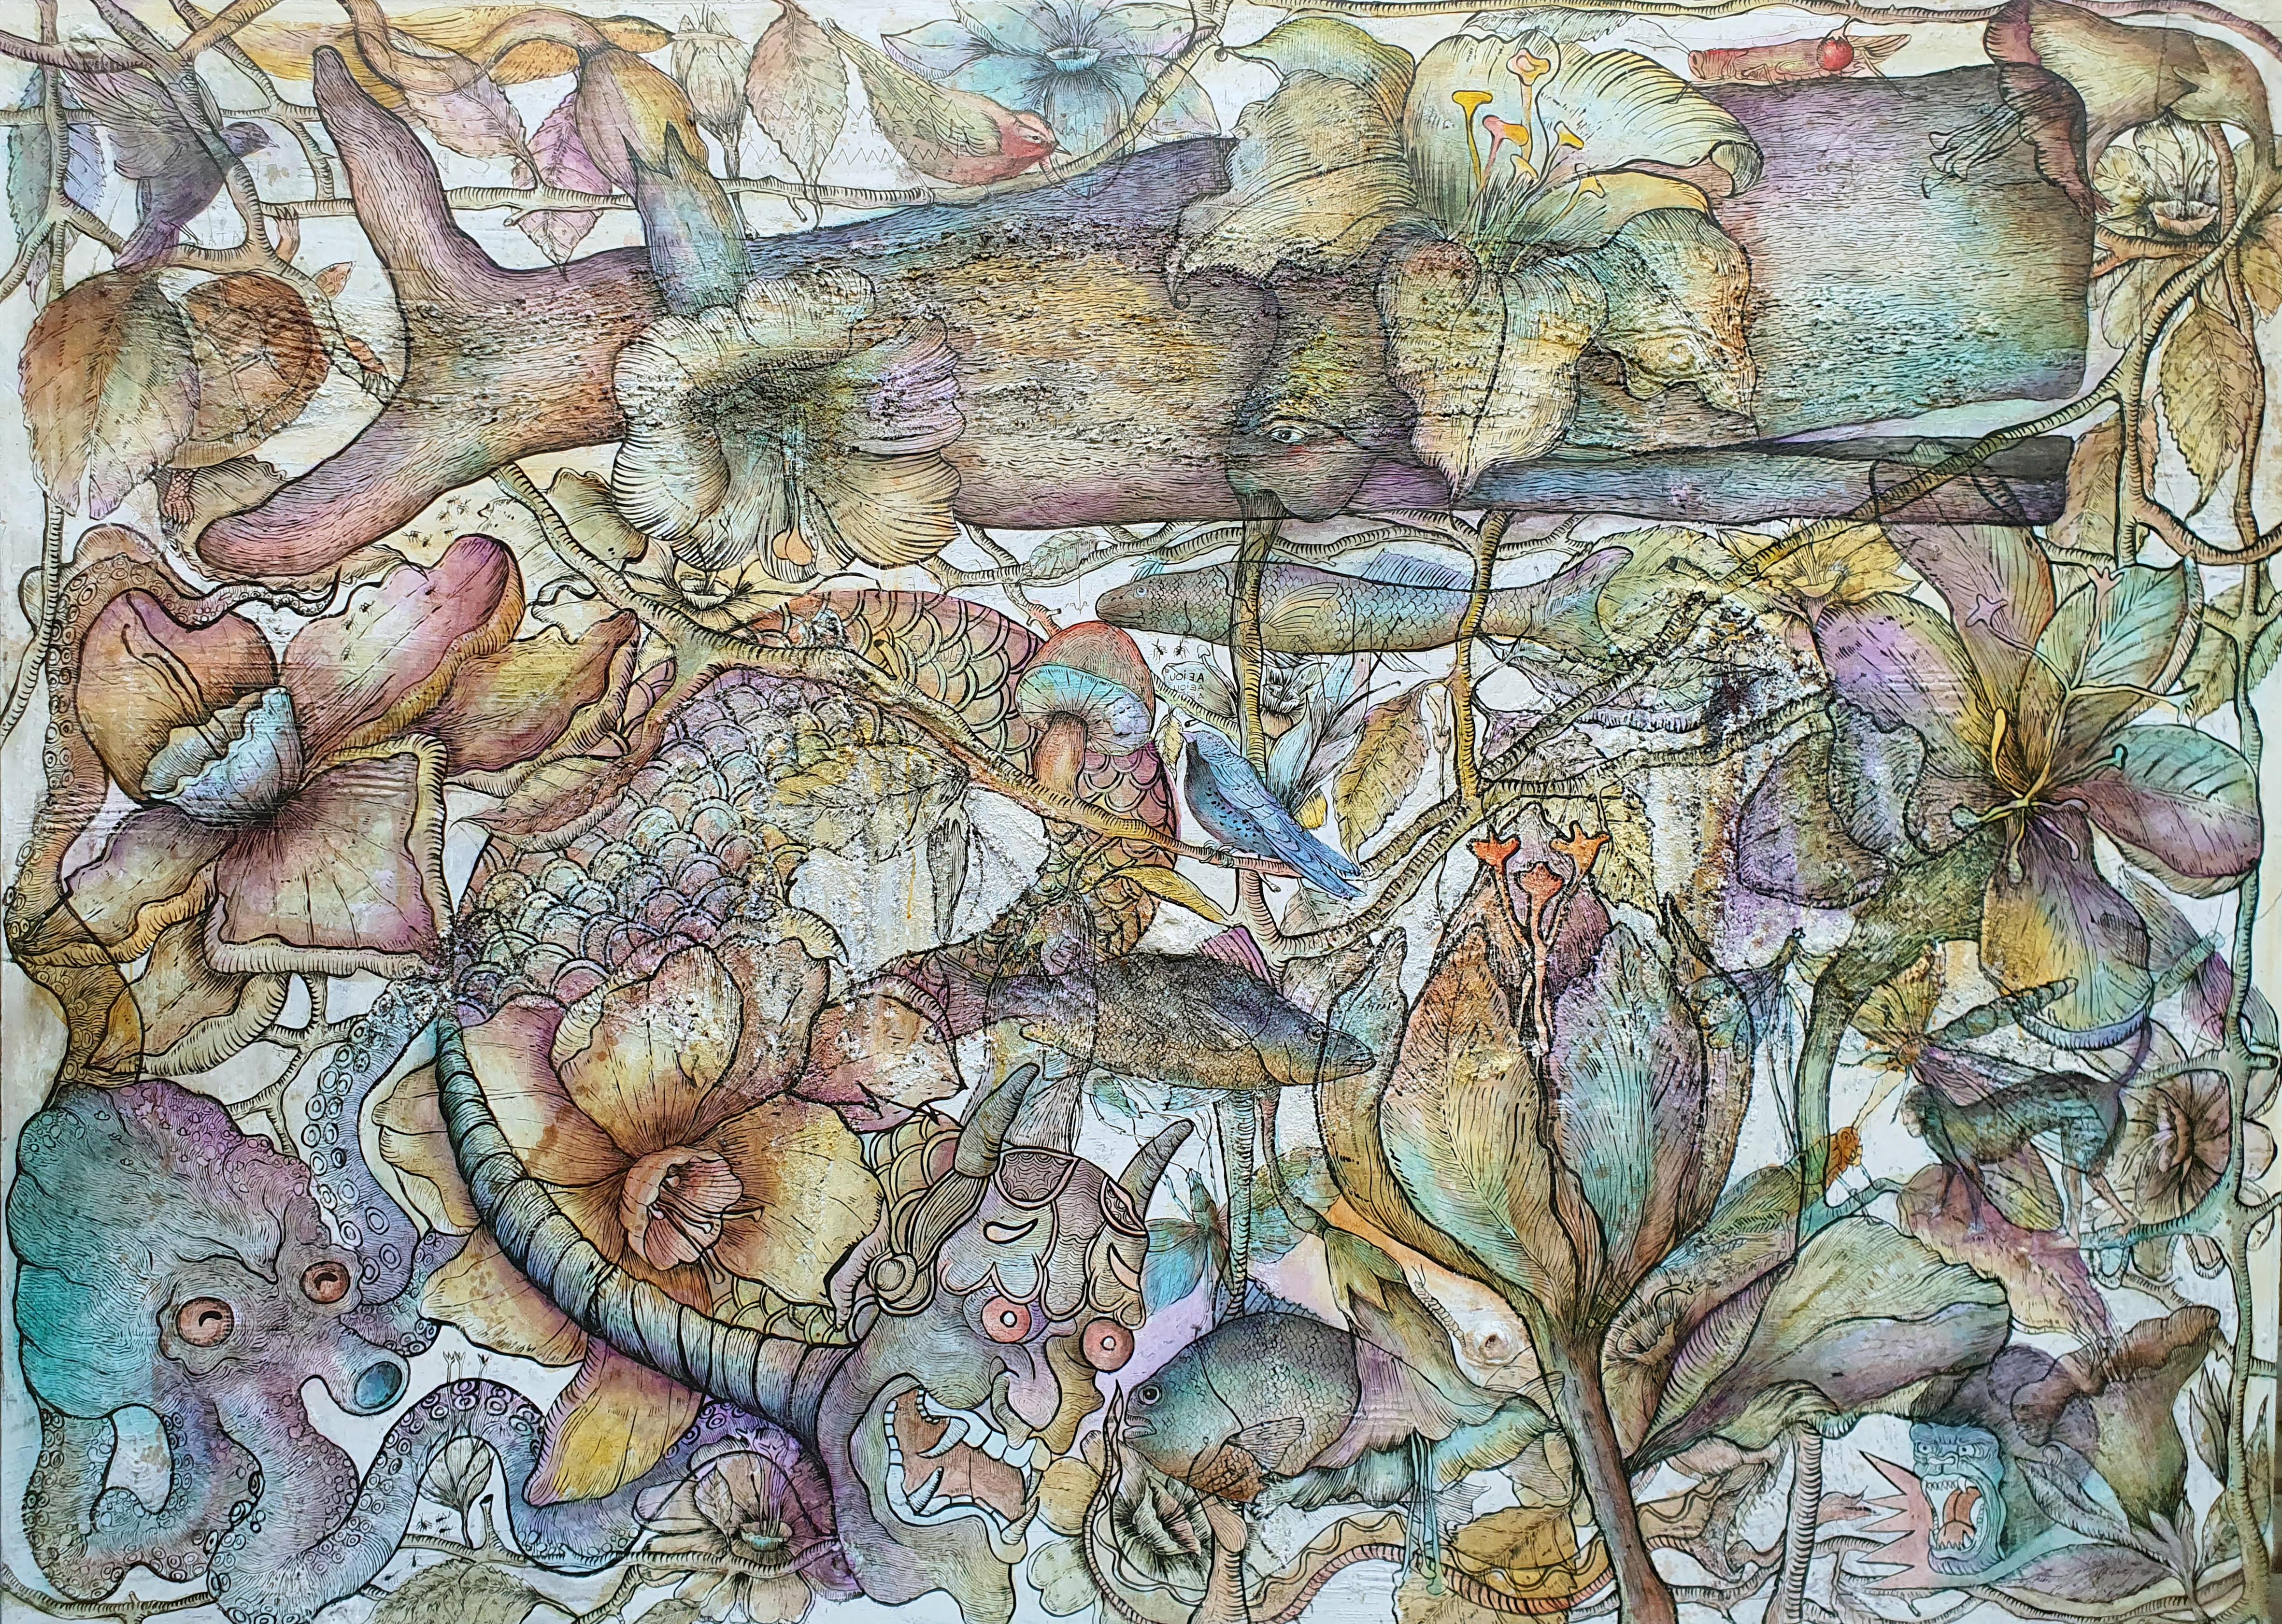 NOCHE DE LIBELULAS, mixed media on canvas, 145 cm x 200 cm